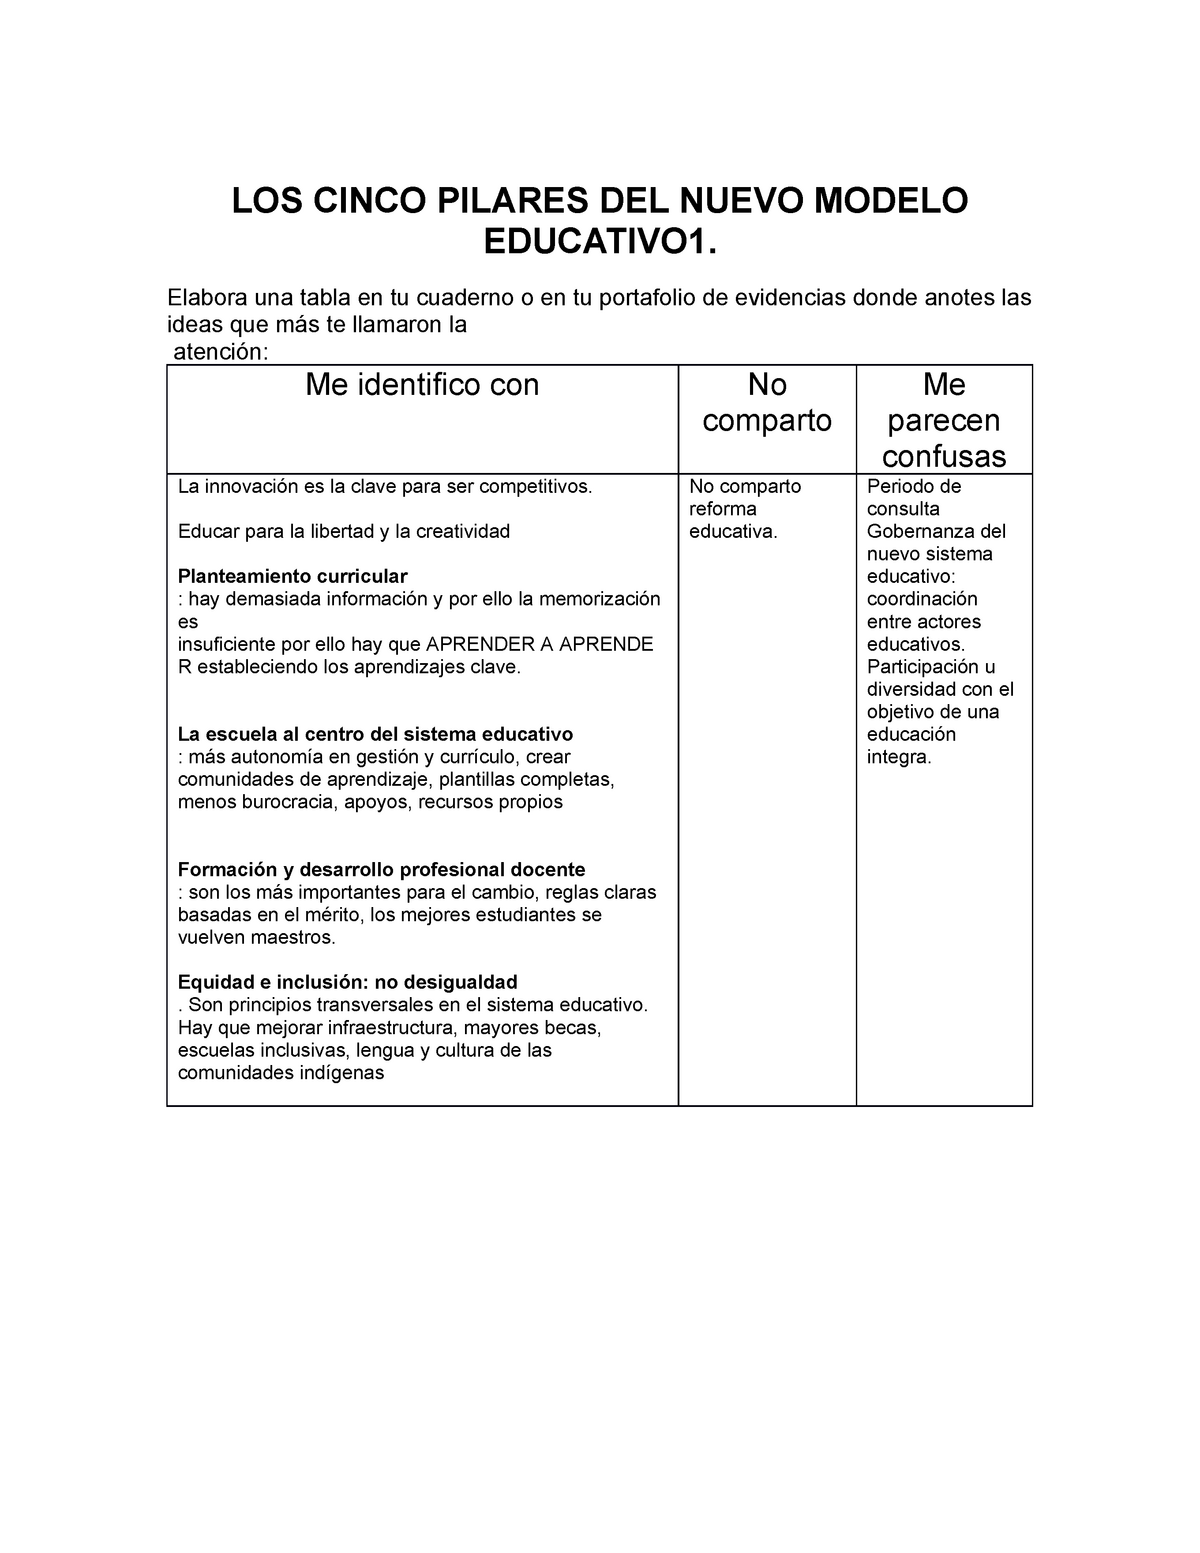 LOS Cinco Pilares DEL Nuevo Modelo Educativo 1 - LOS CINCO PILARES DEL NUEVO  MODELO EDUCATIVO1. - Studocu